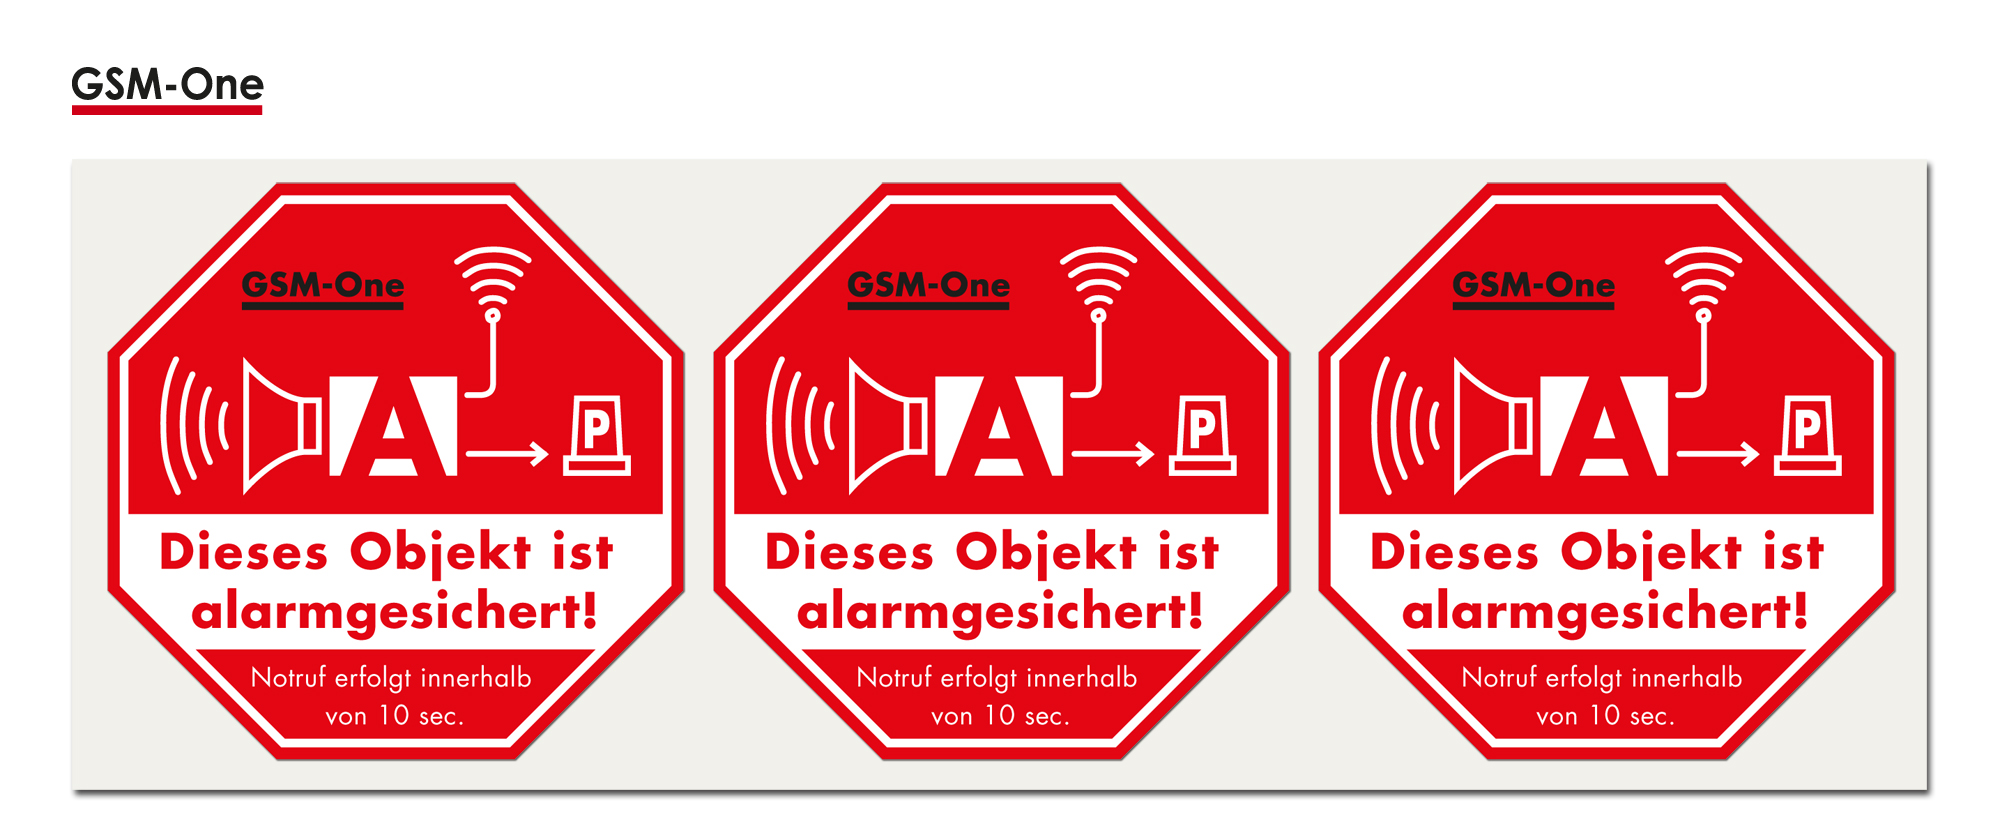 Aukleber -Alarmgesichert- von GSM-One: DRH-ST-100